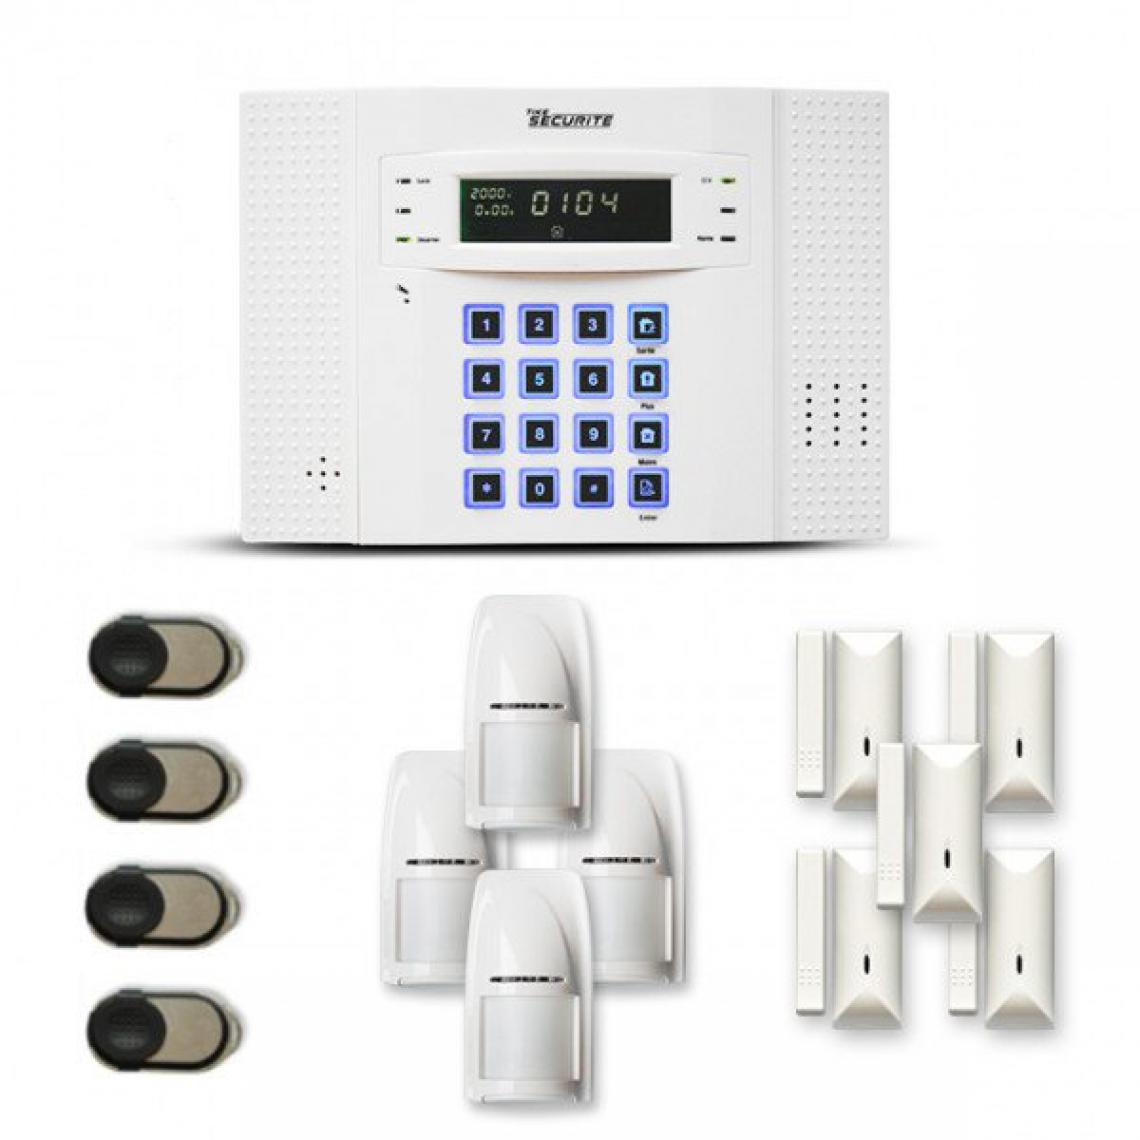 Tike Securite - Alarme maison sans fil DNB18 Compatible Box internet et GSM - Alarme connectée